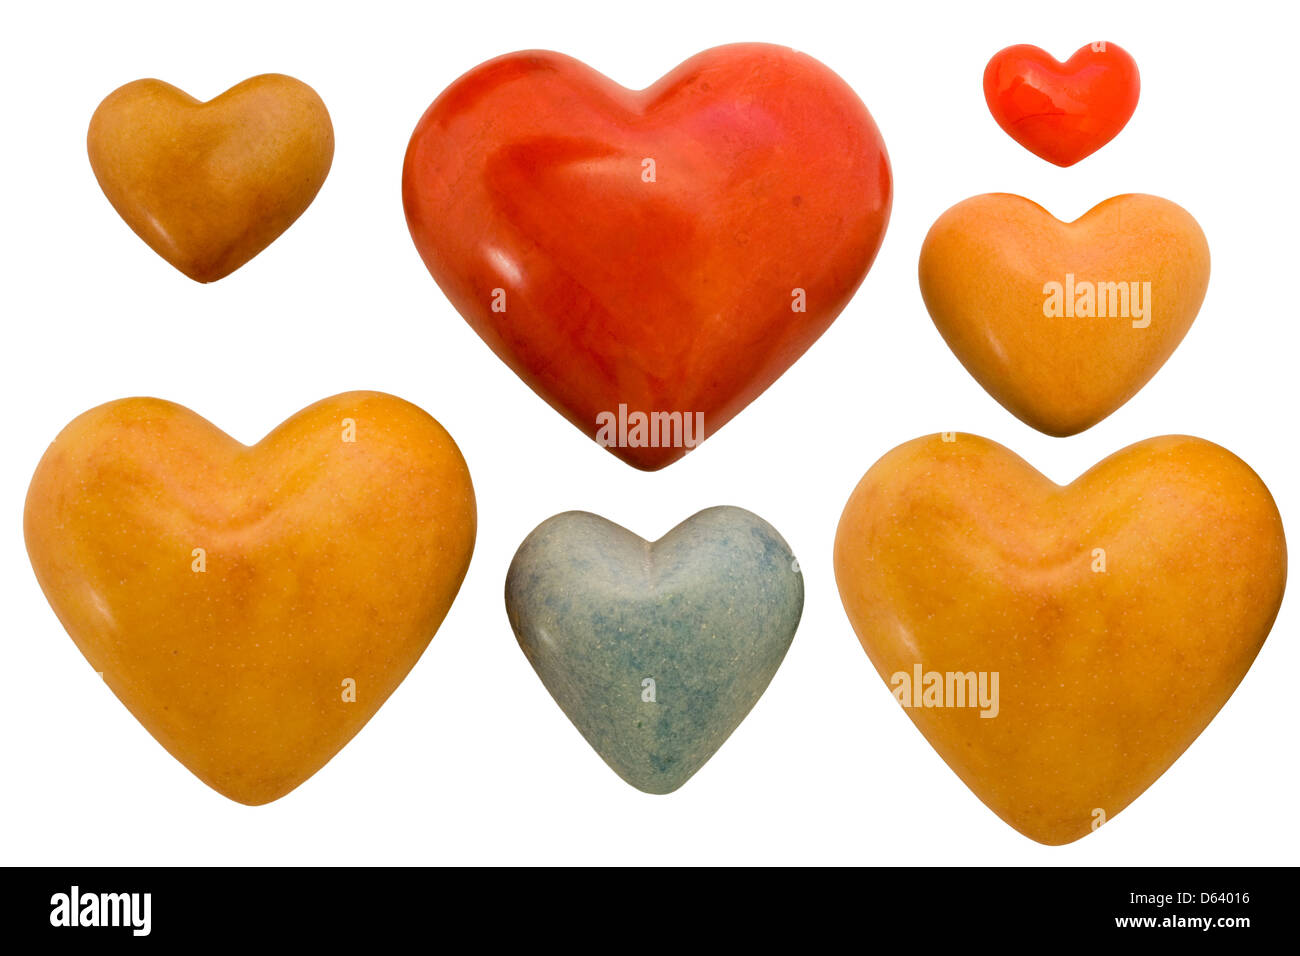 hearts Stock Photo